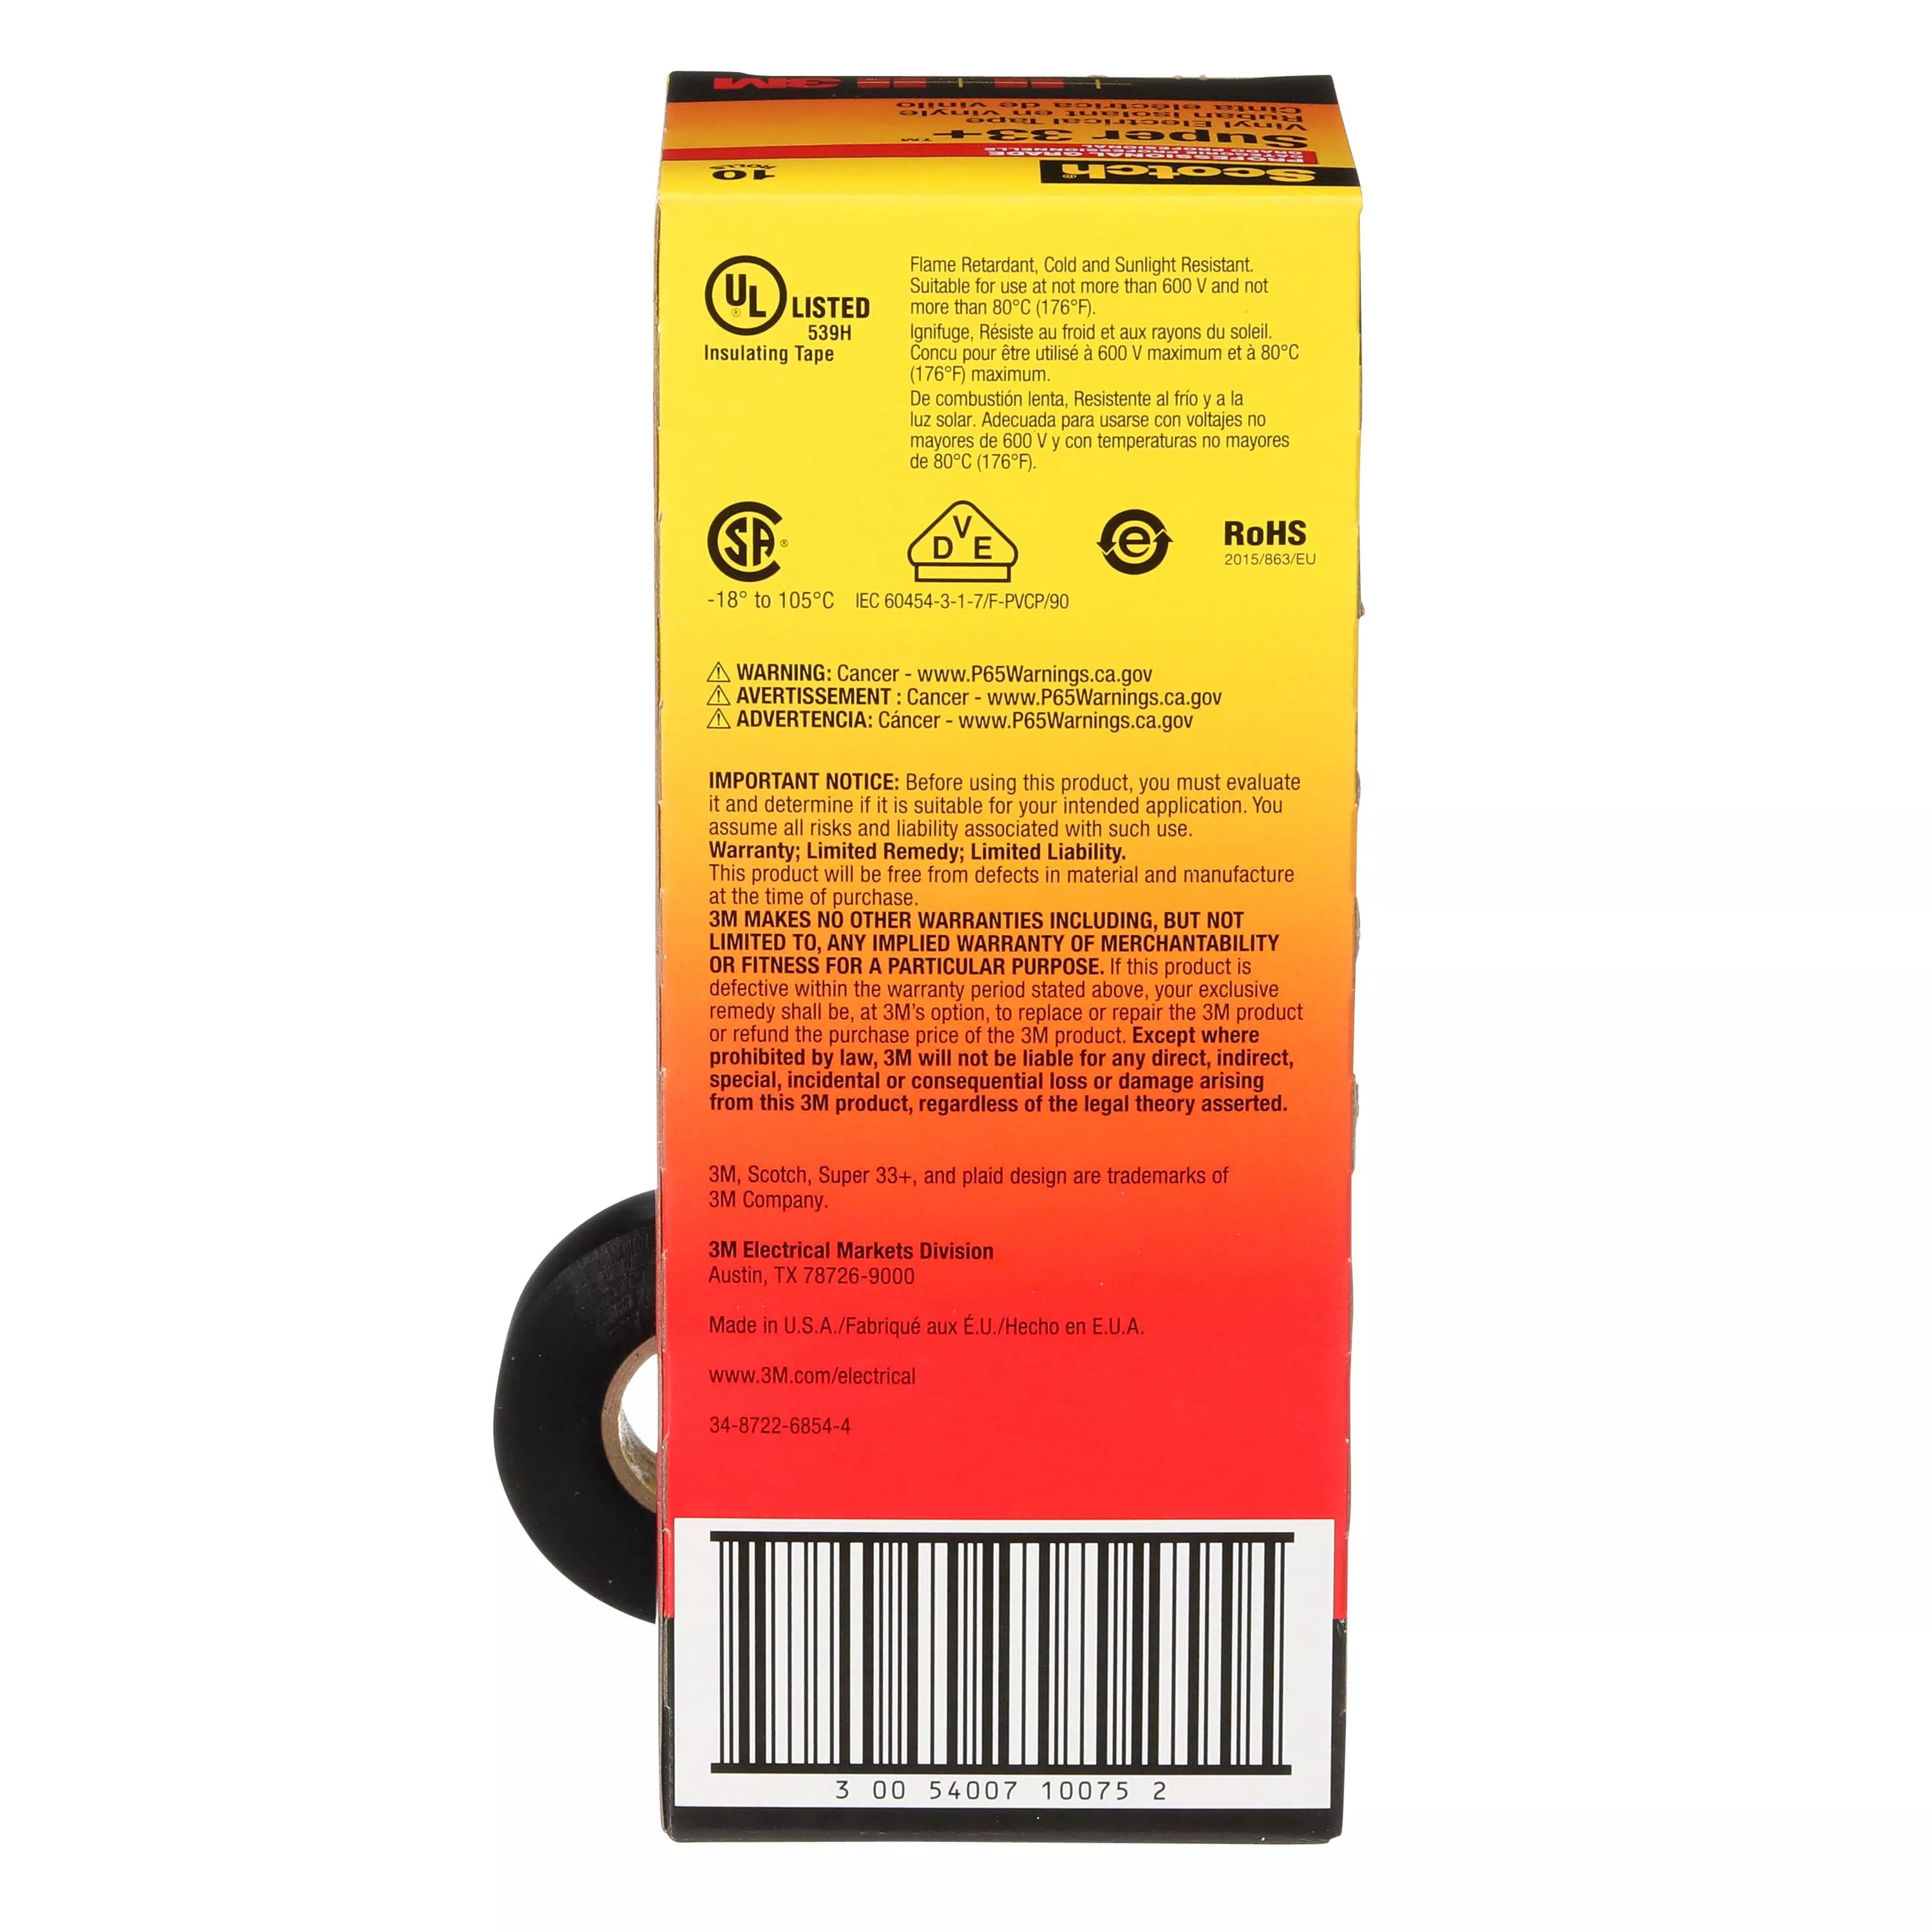 SKU 7010350130 | Scotch® Super 33+ Vinyl Electrical Tape